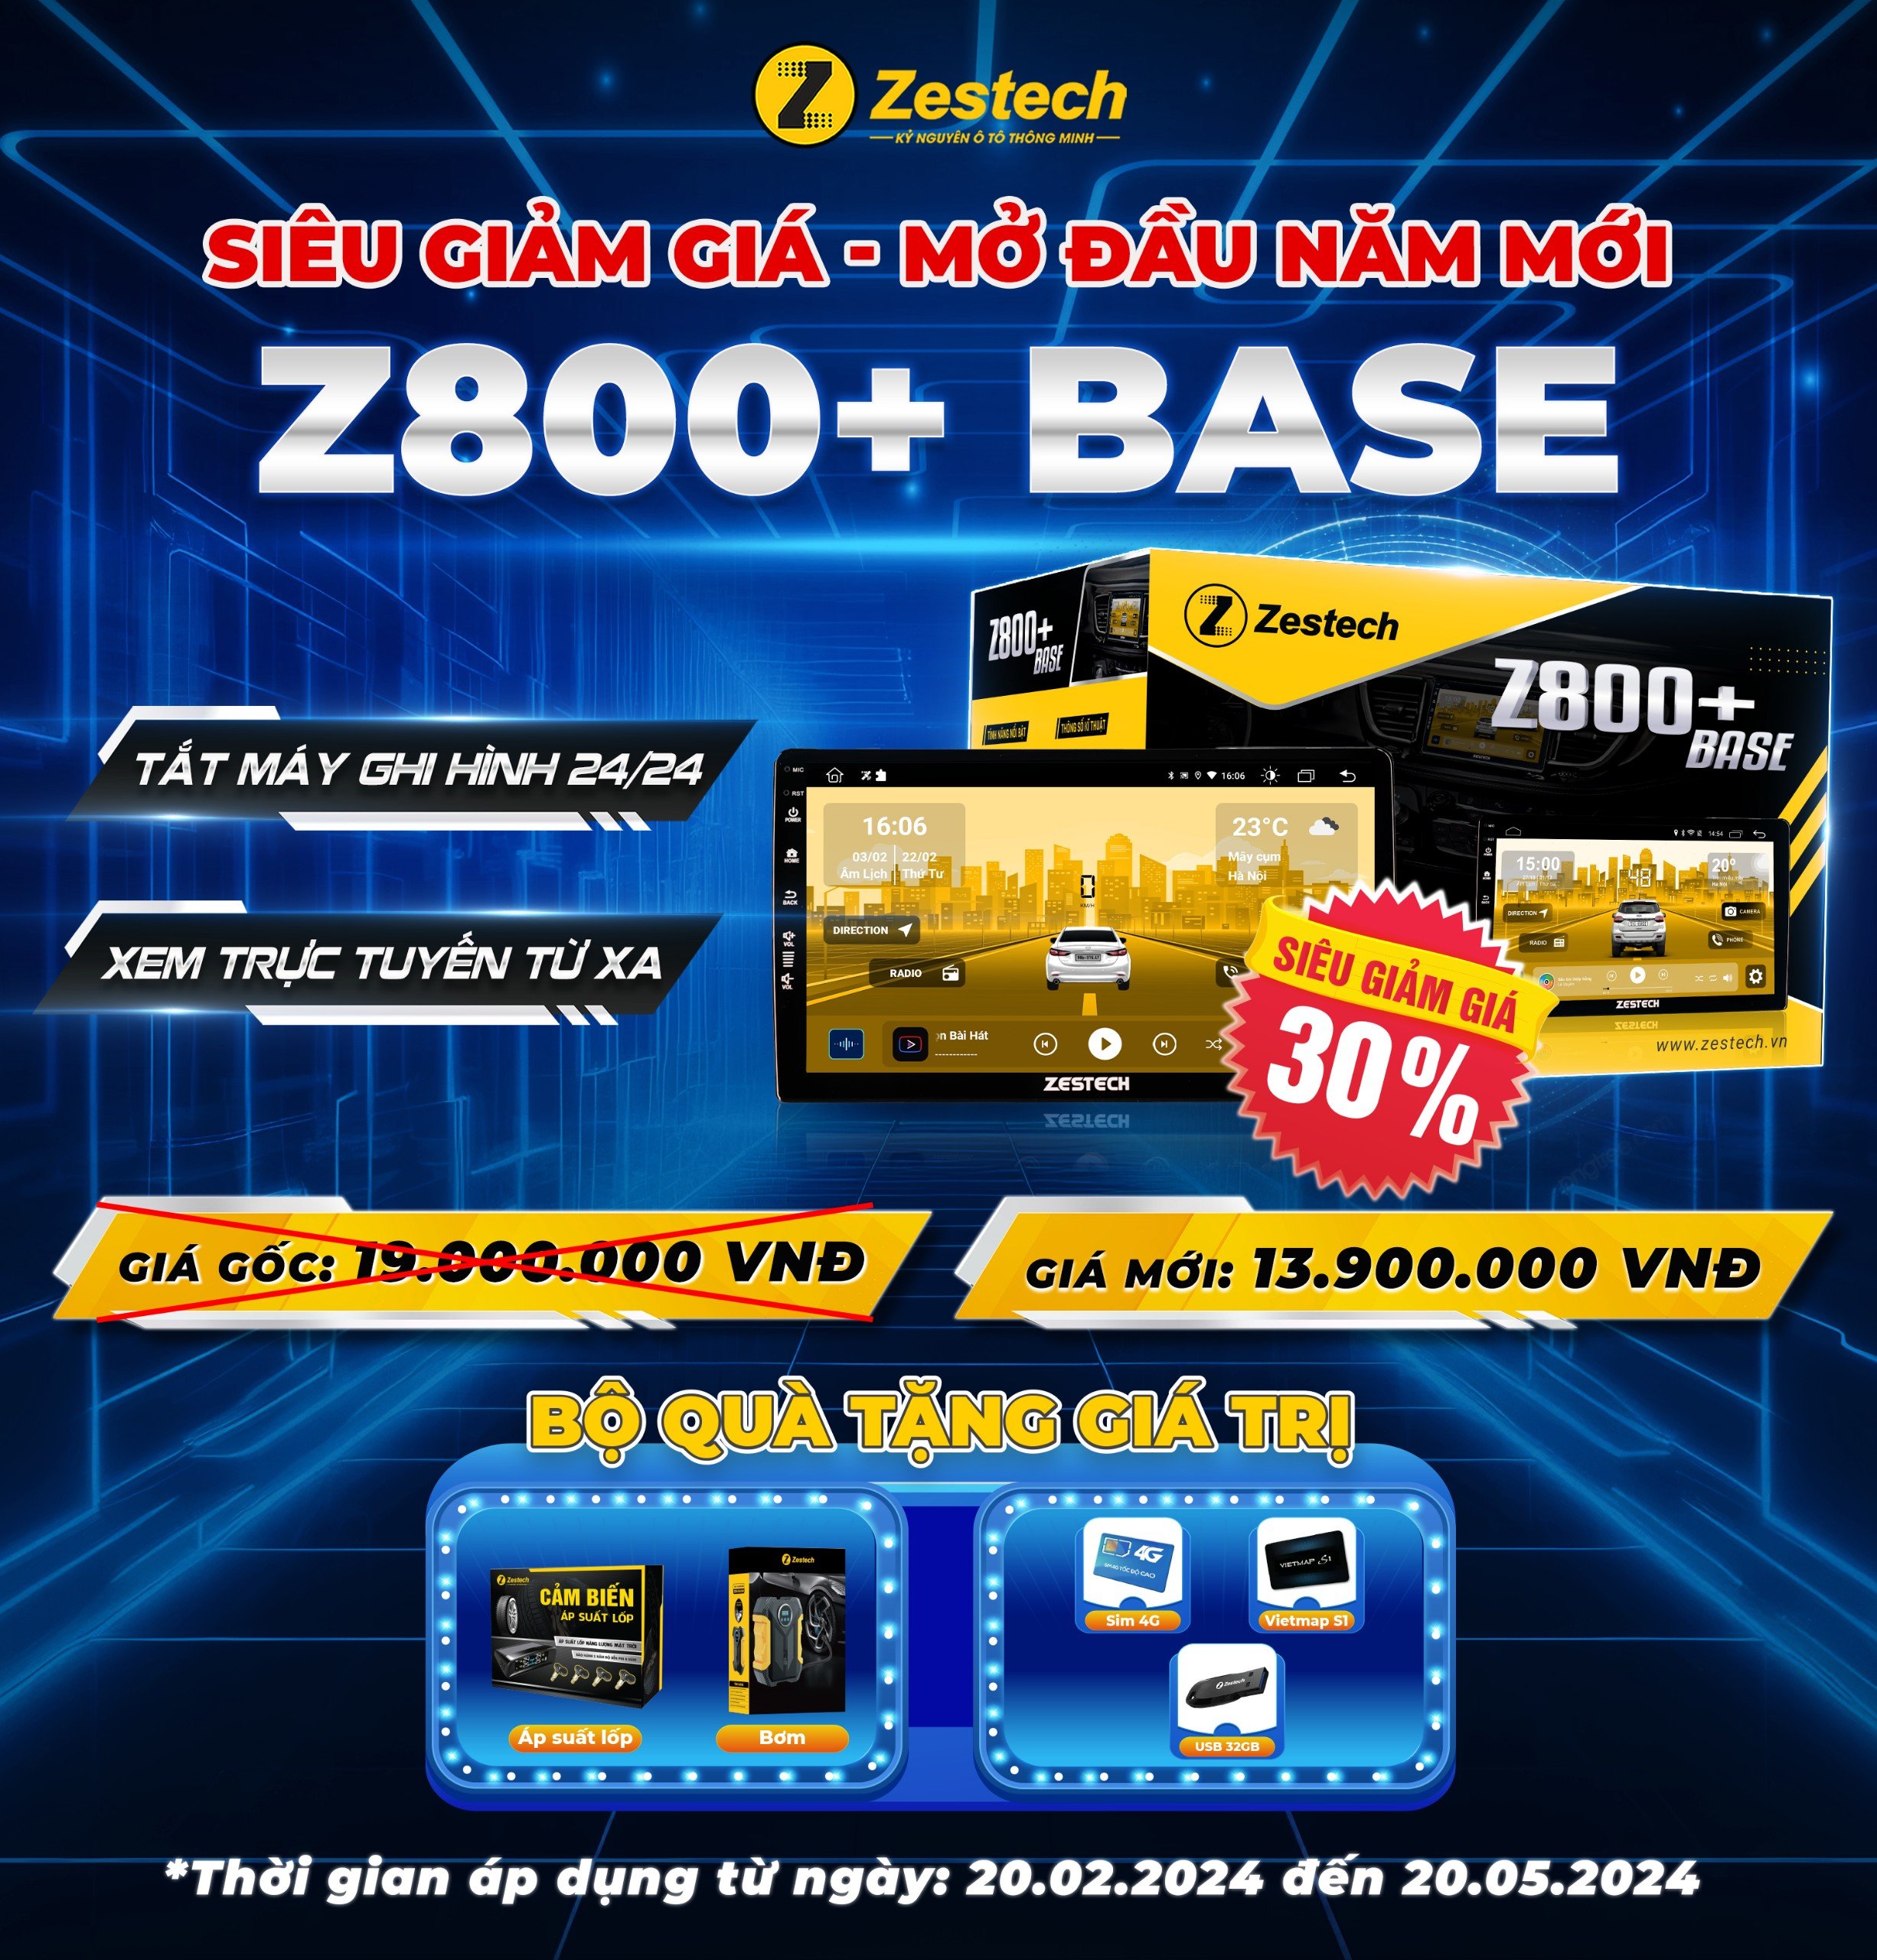 Chương trình giảm giá sản phẩm Màn hình Z800+Base